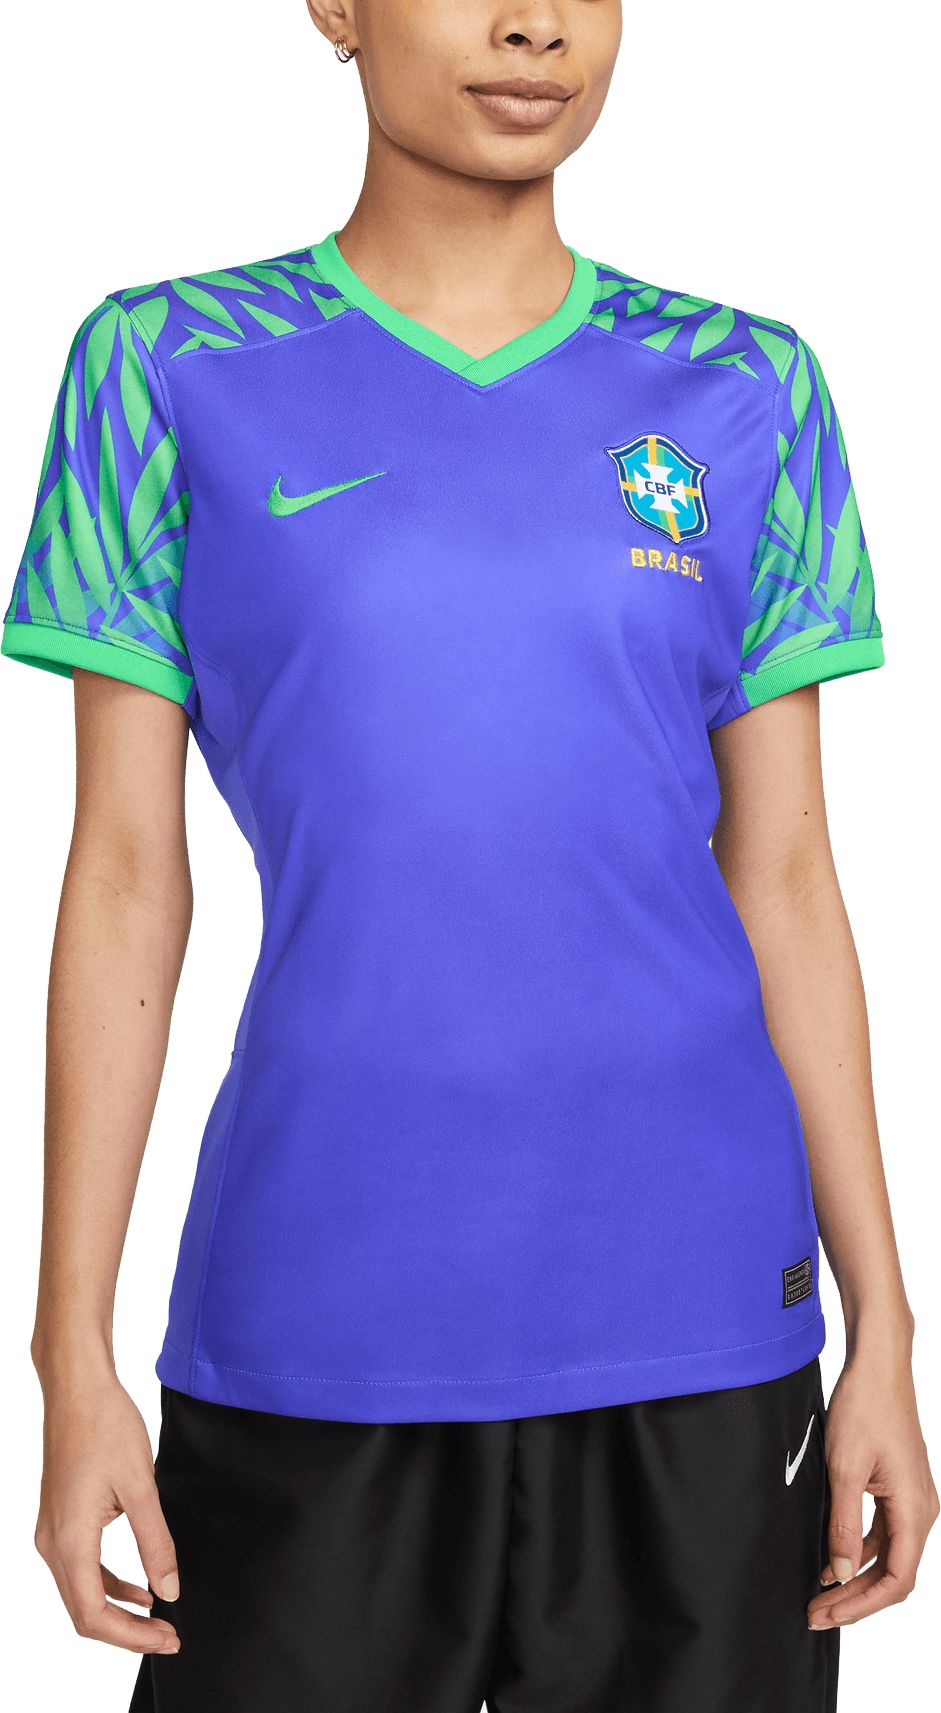 brazil jersey replica